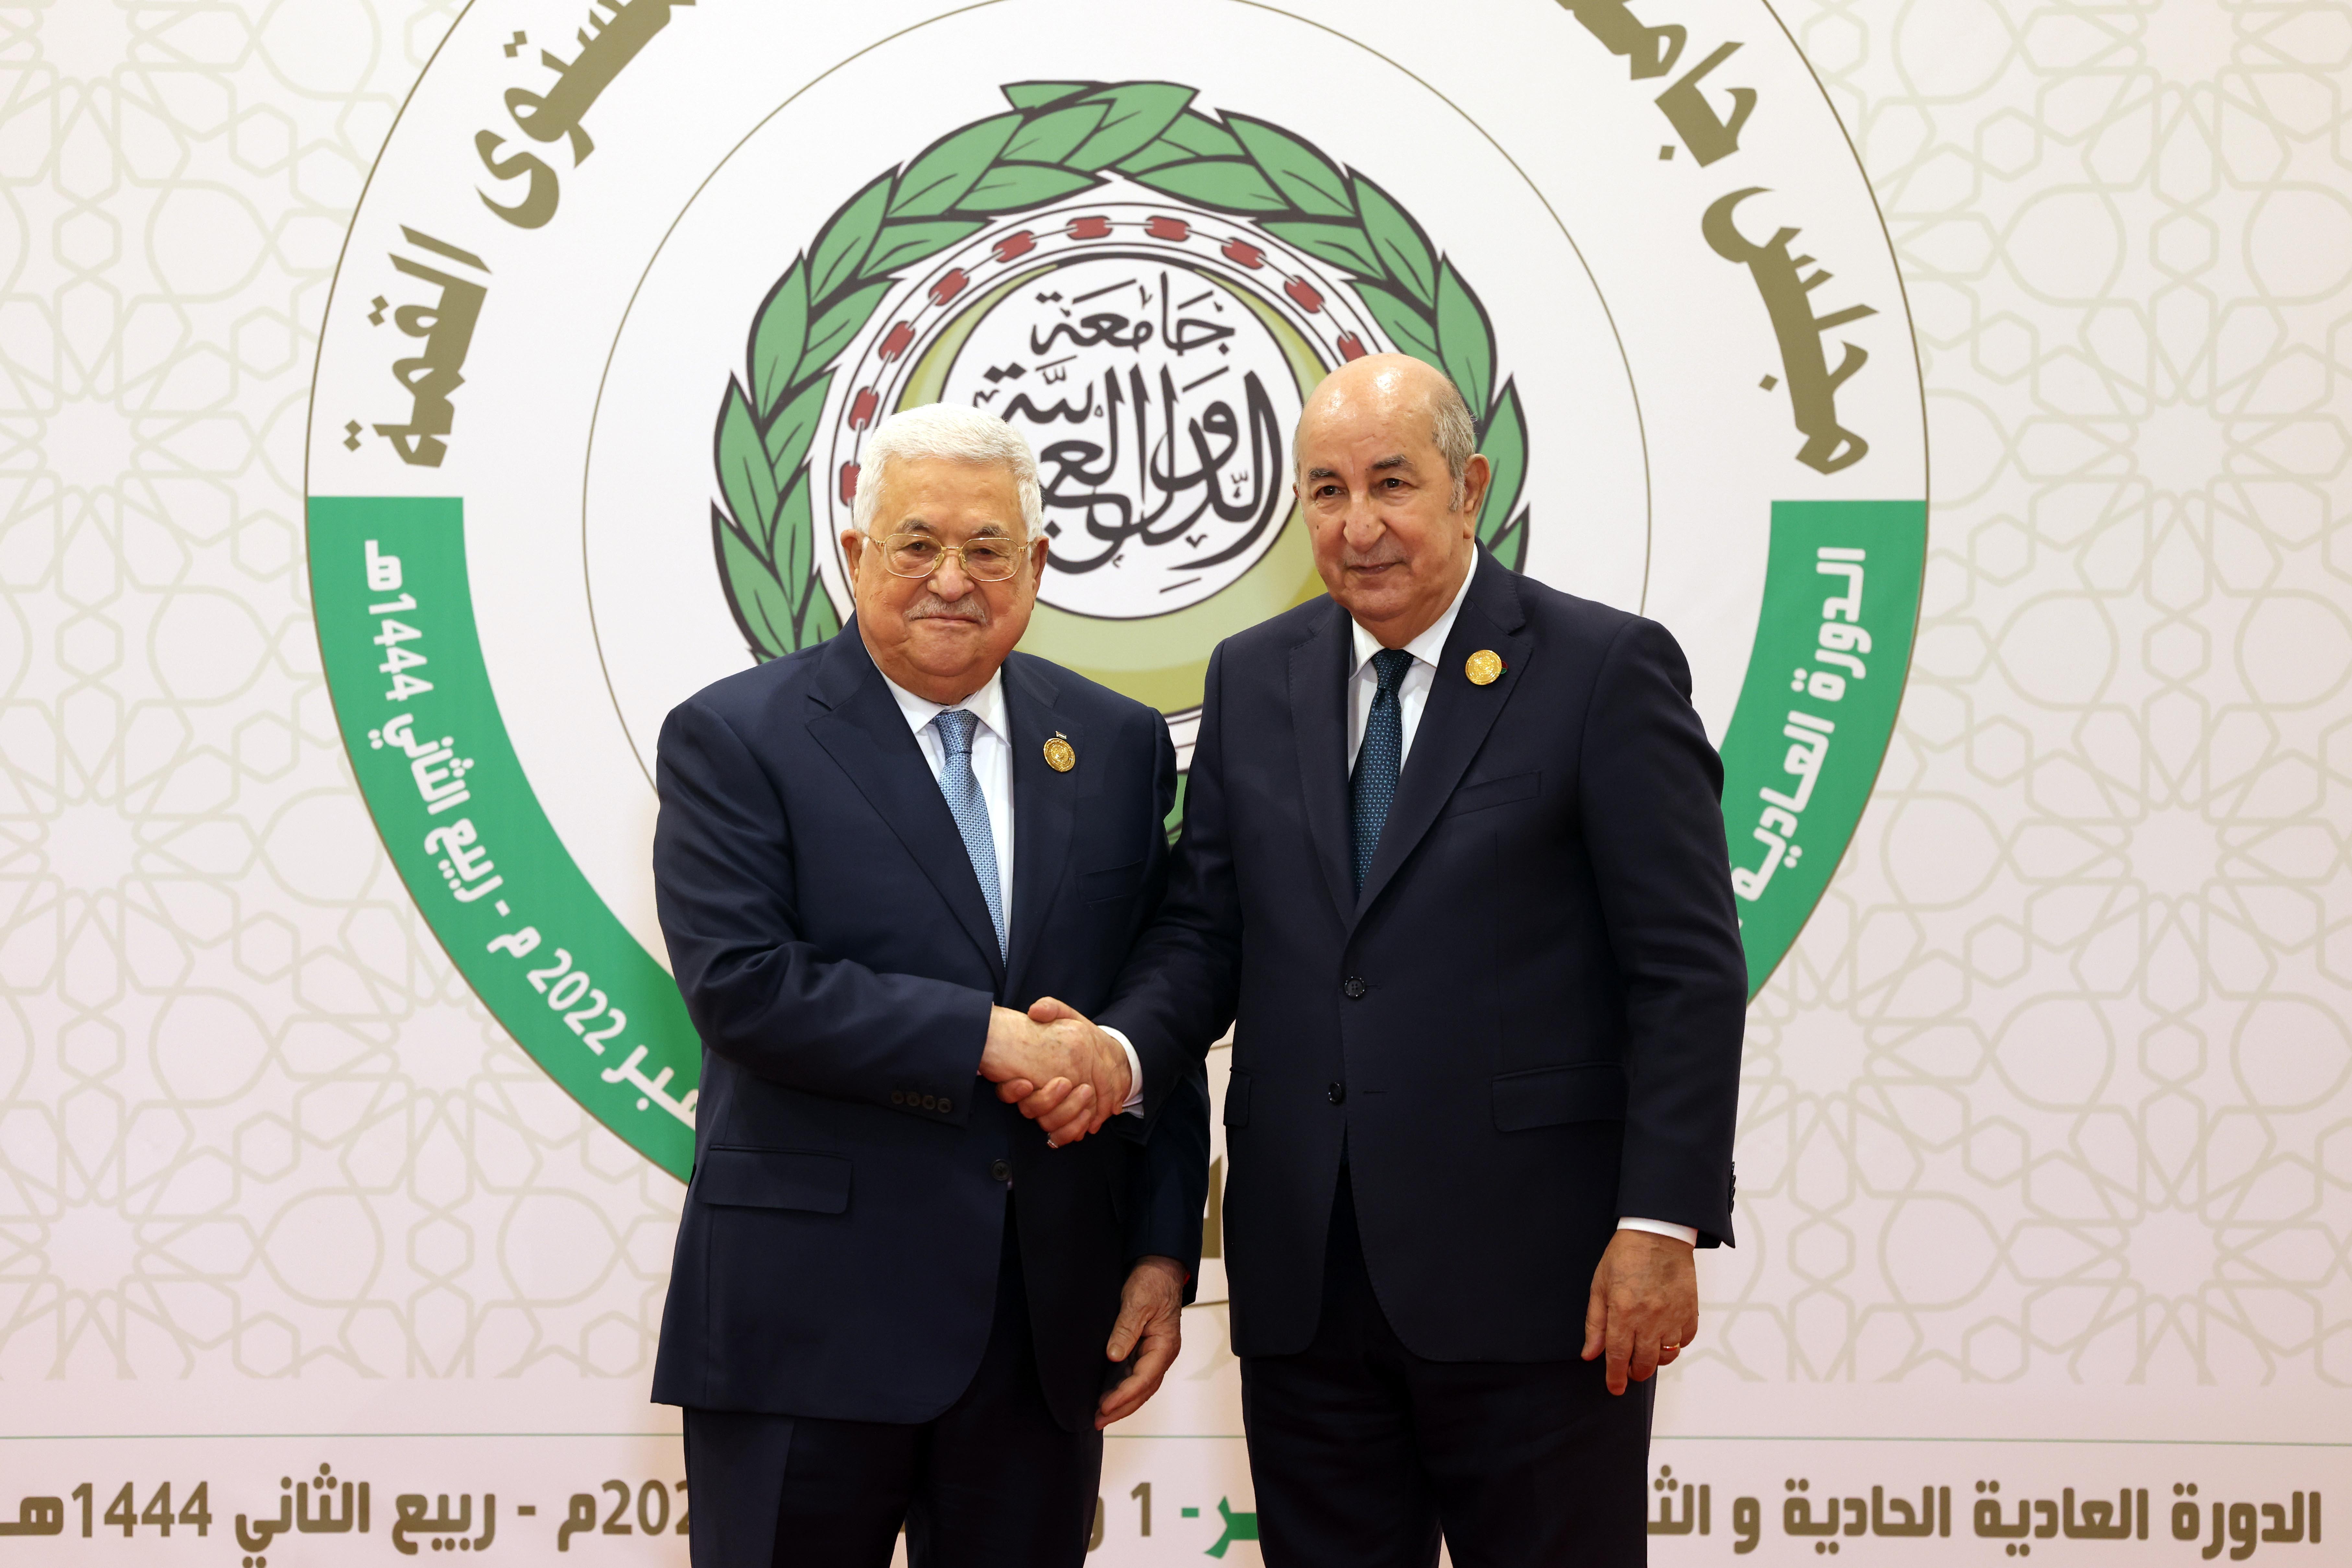 انطلاق أعمال القمة العربية الـ31 في الجزائر 7.jpg